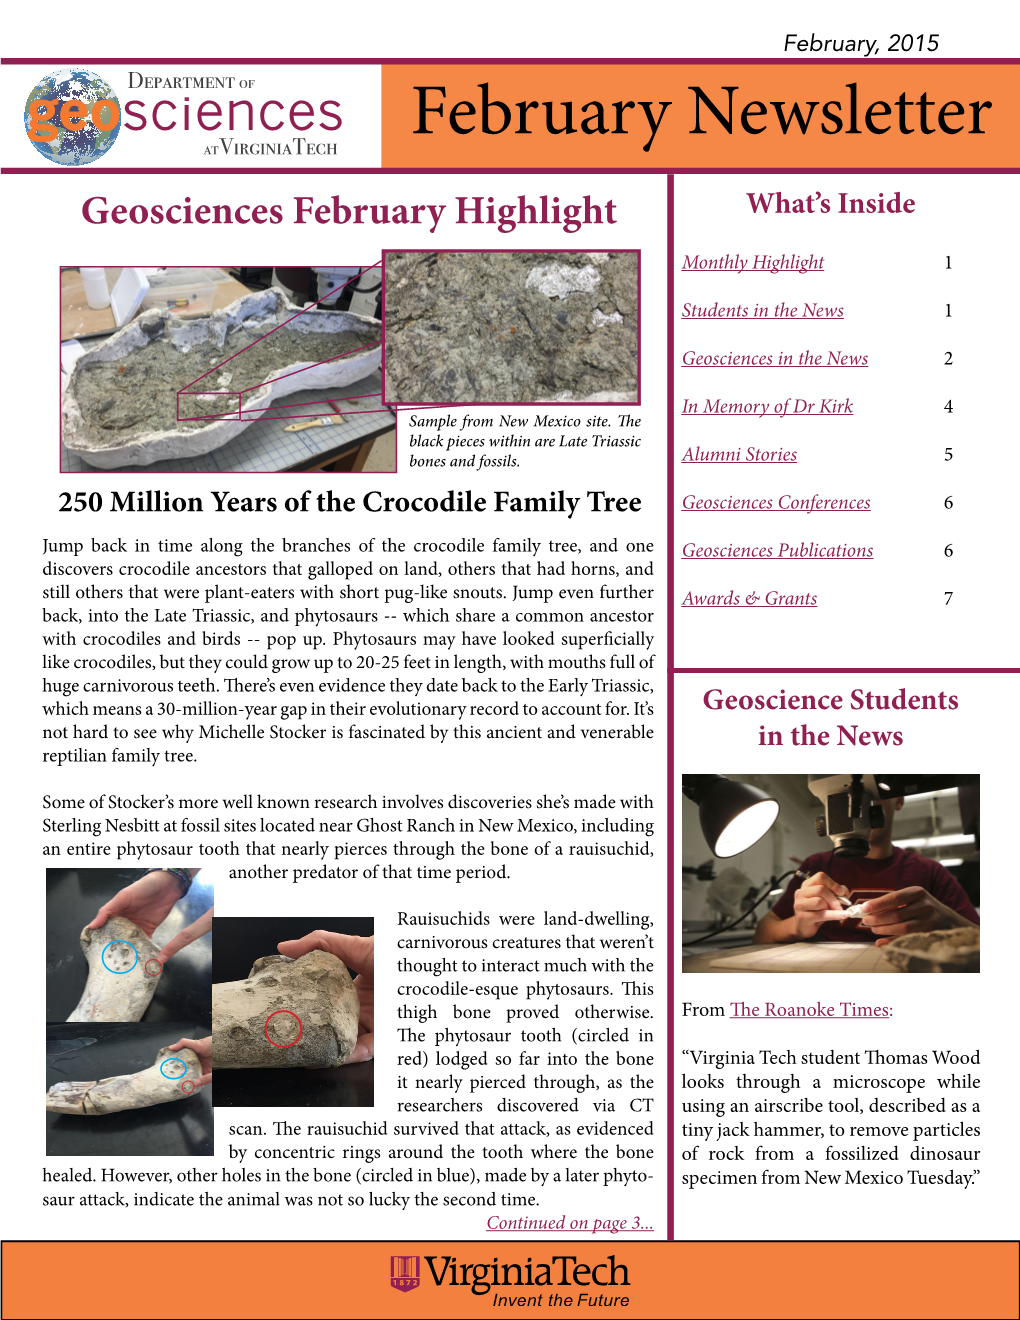 February Newsletter 2015.Pdf (7.003Mb)